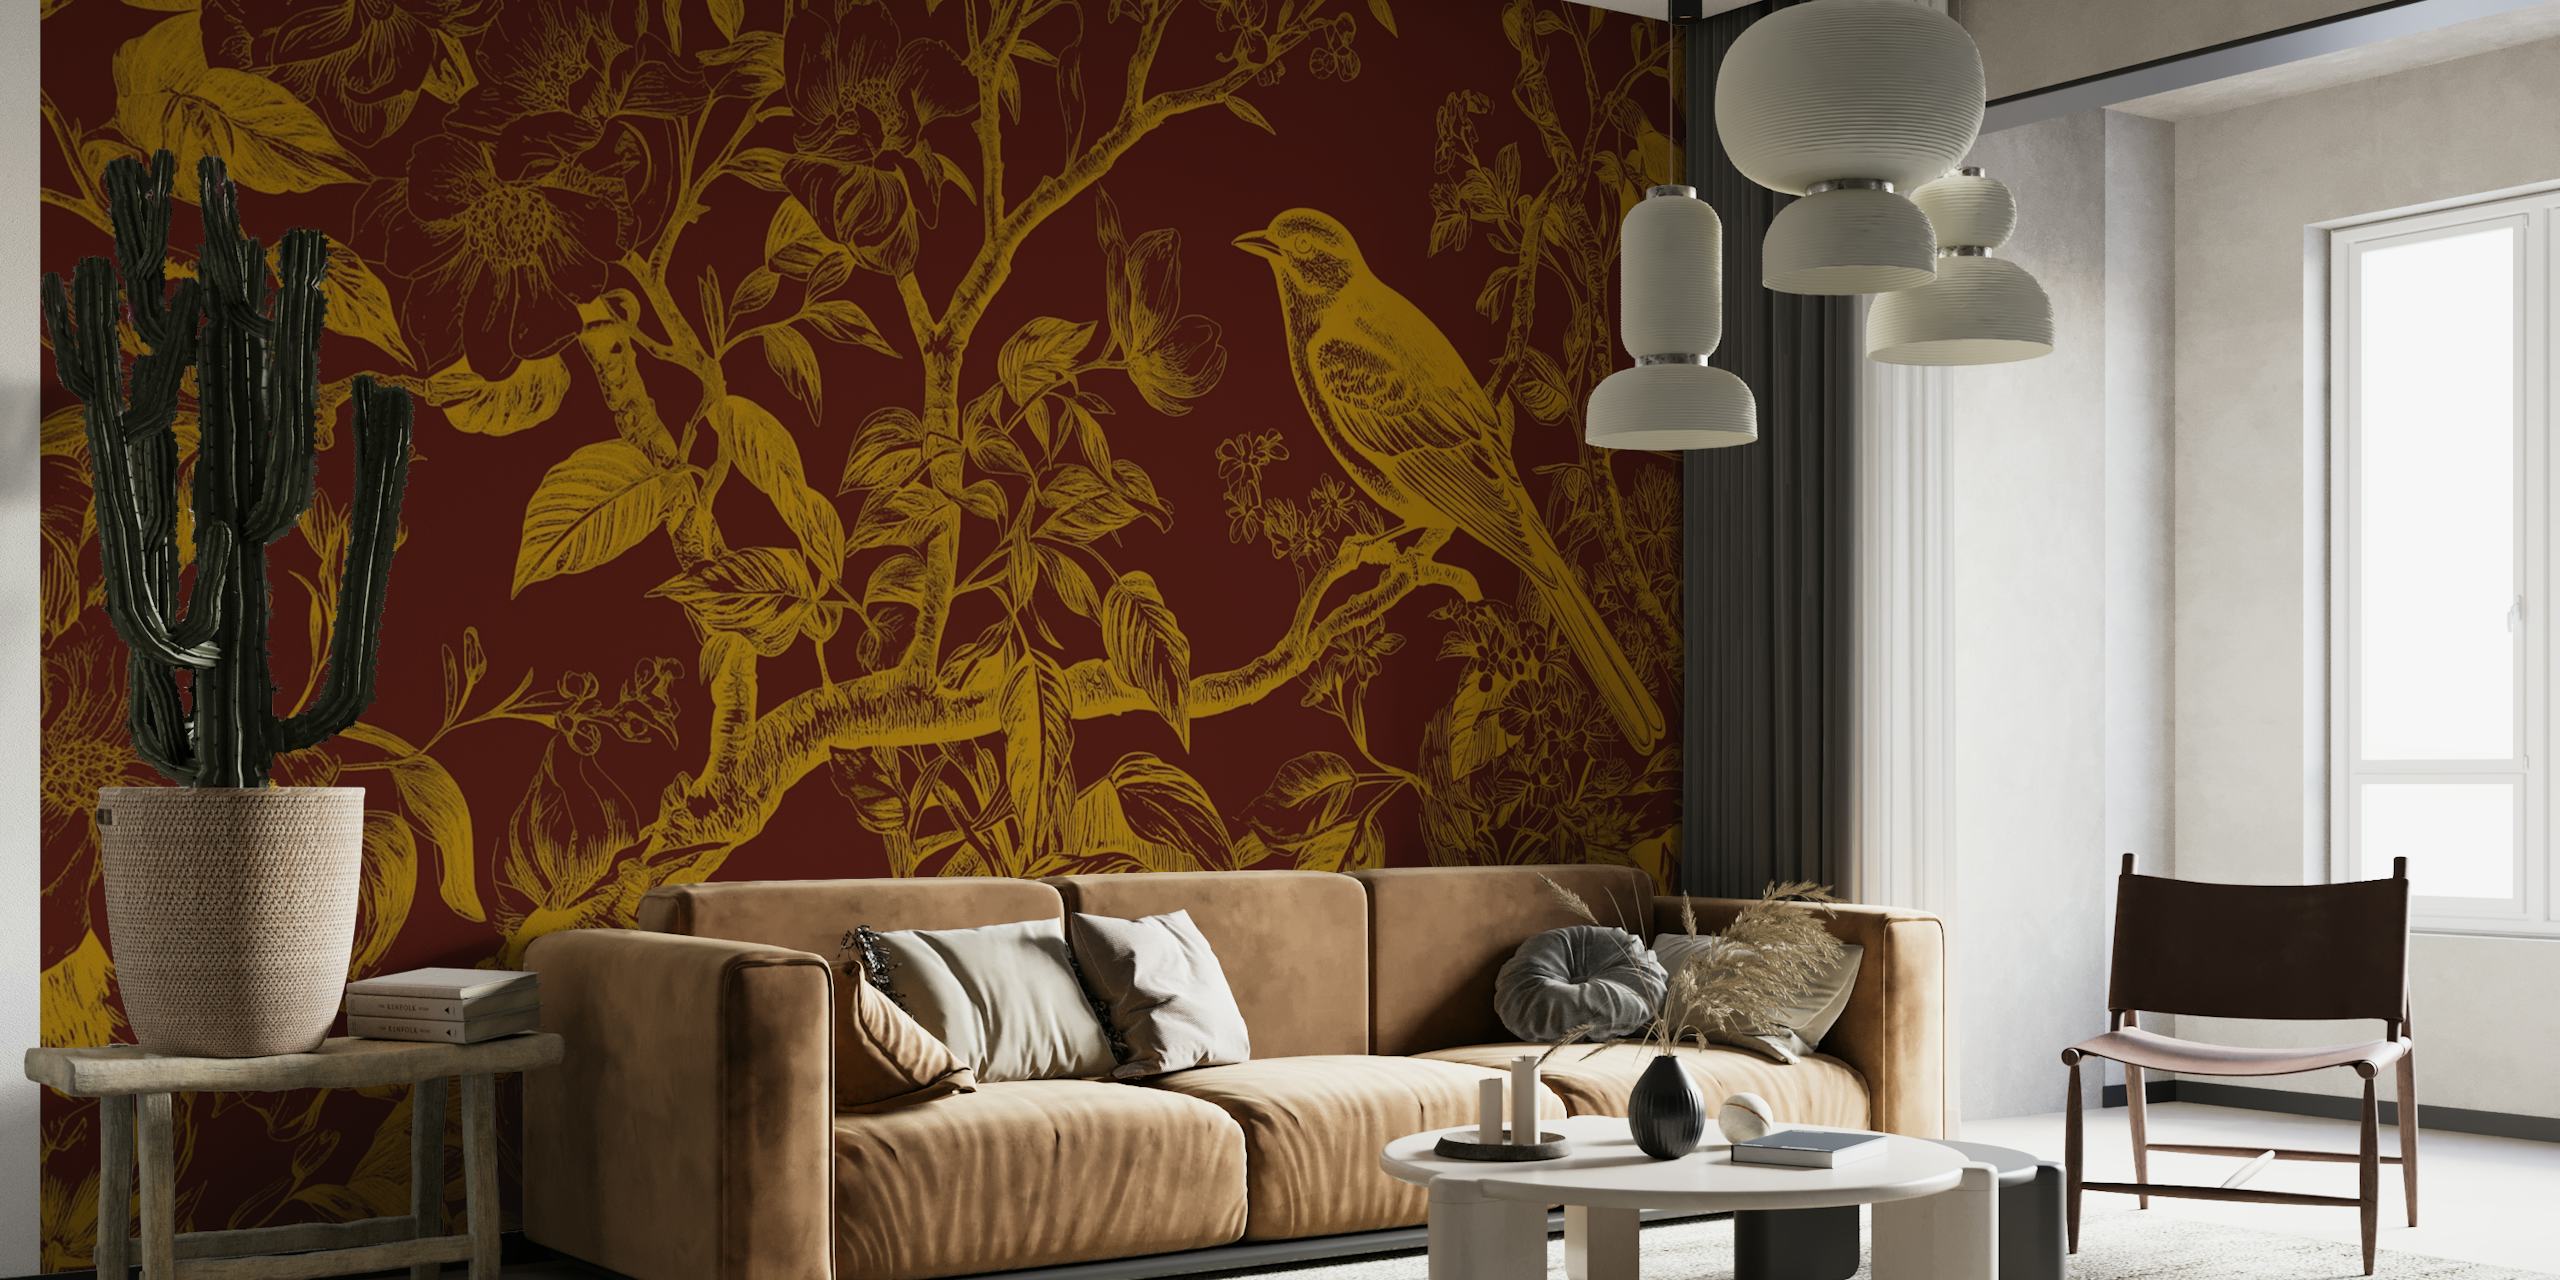 Classic Golden Bird wallpaper